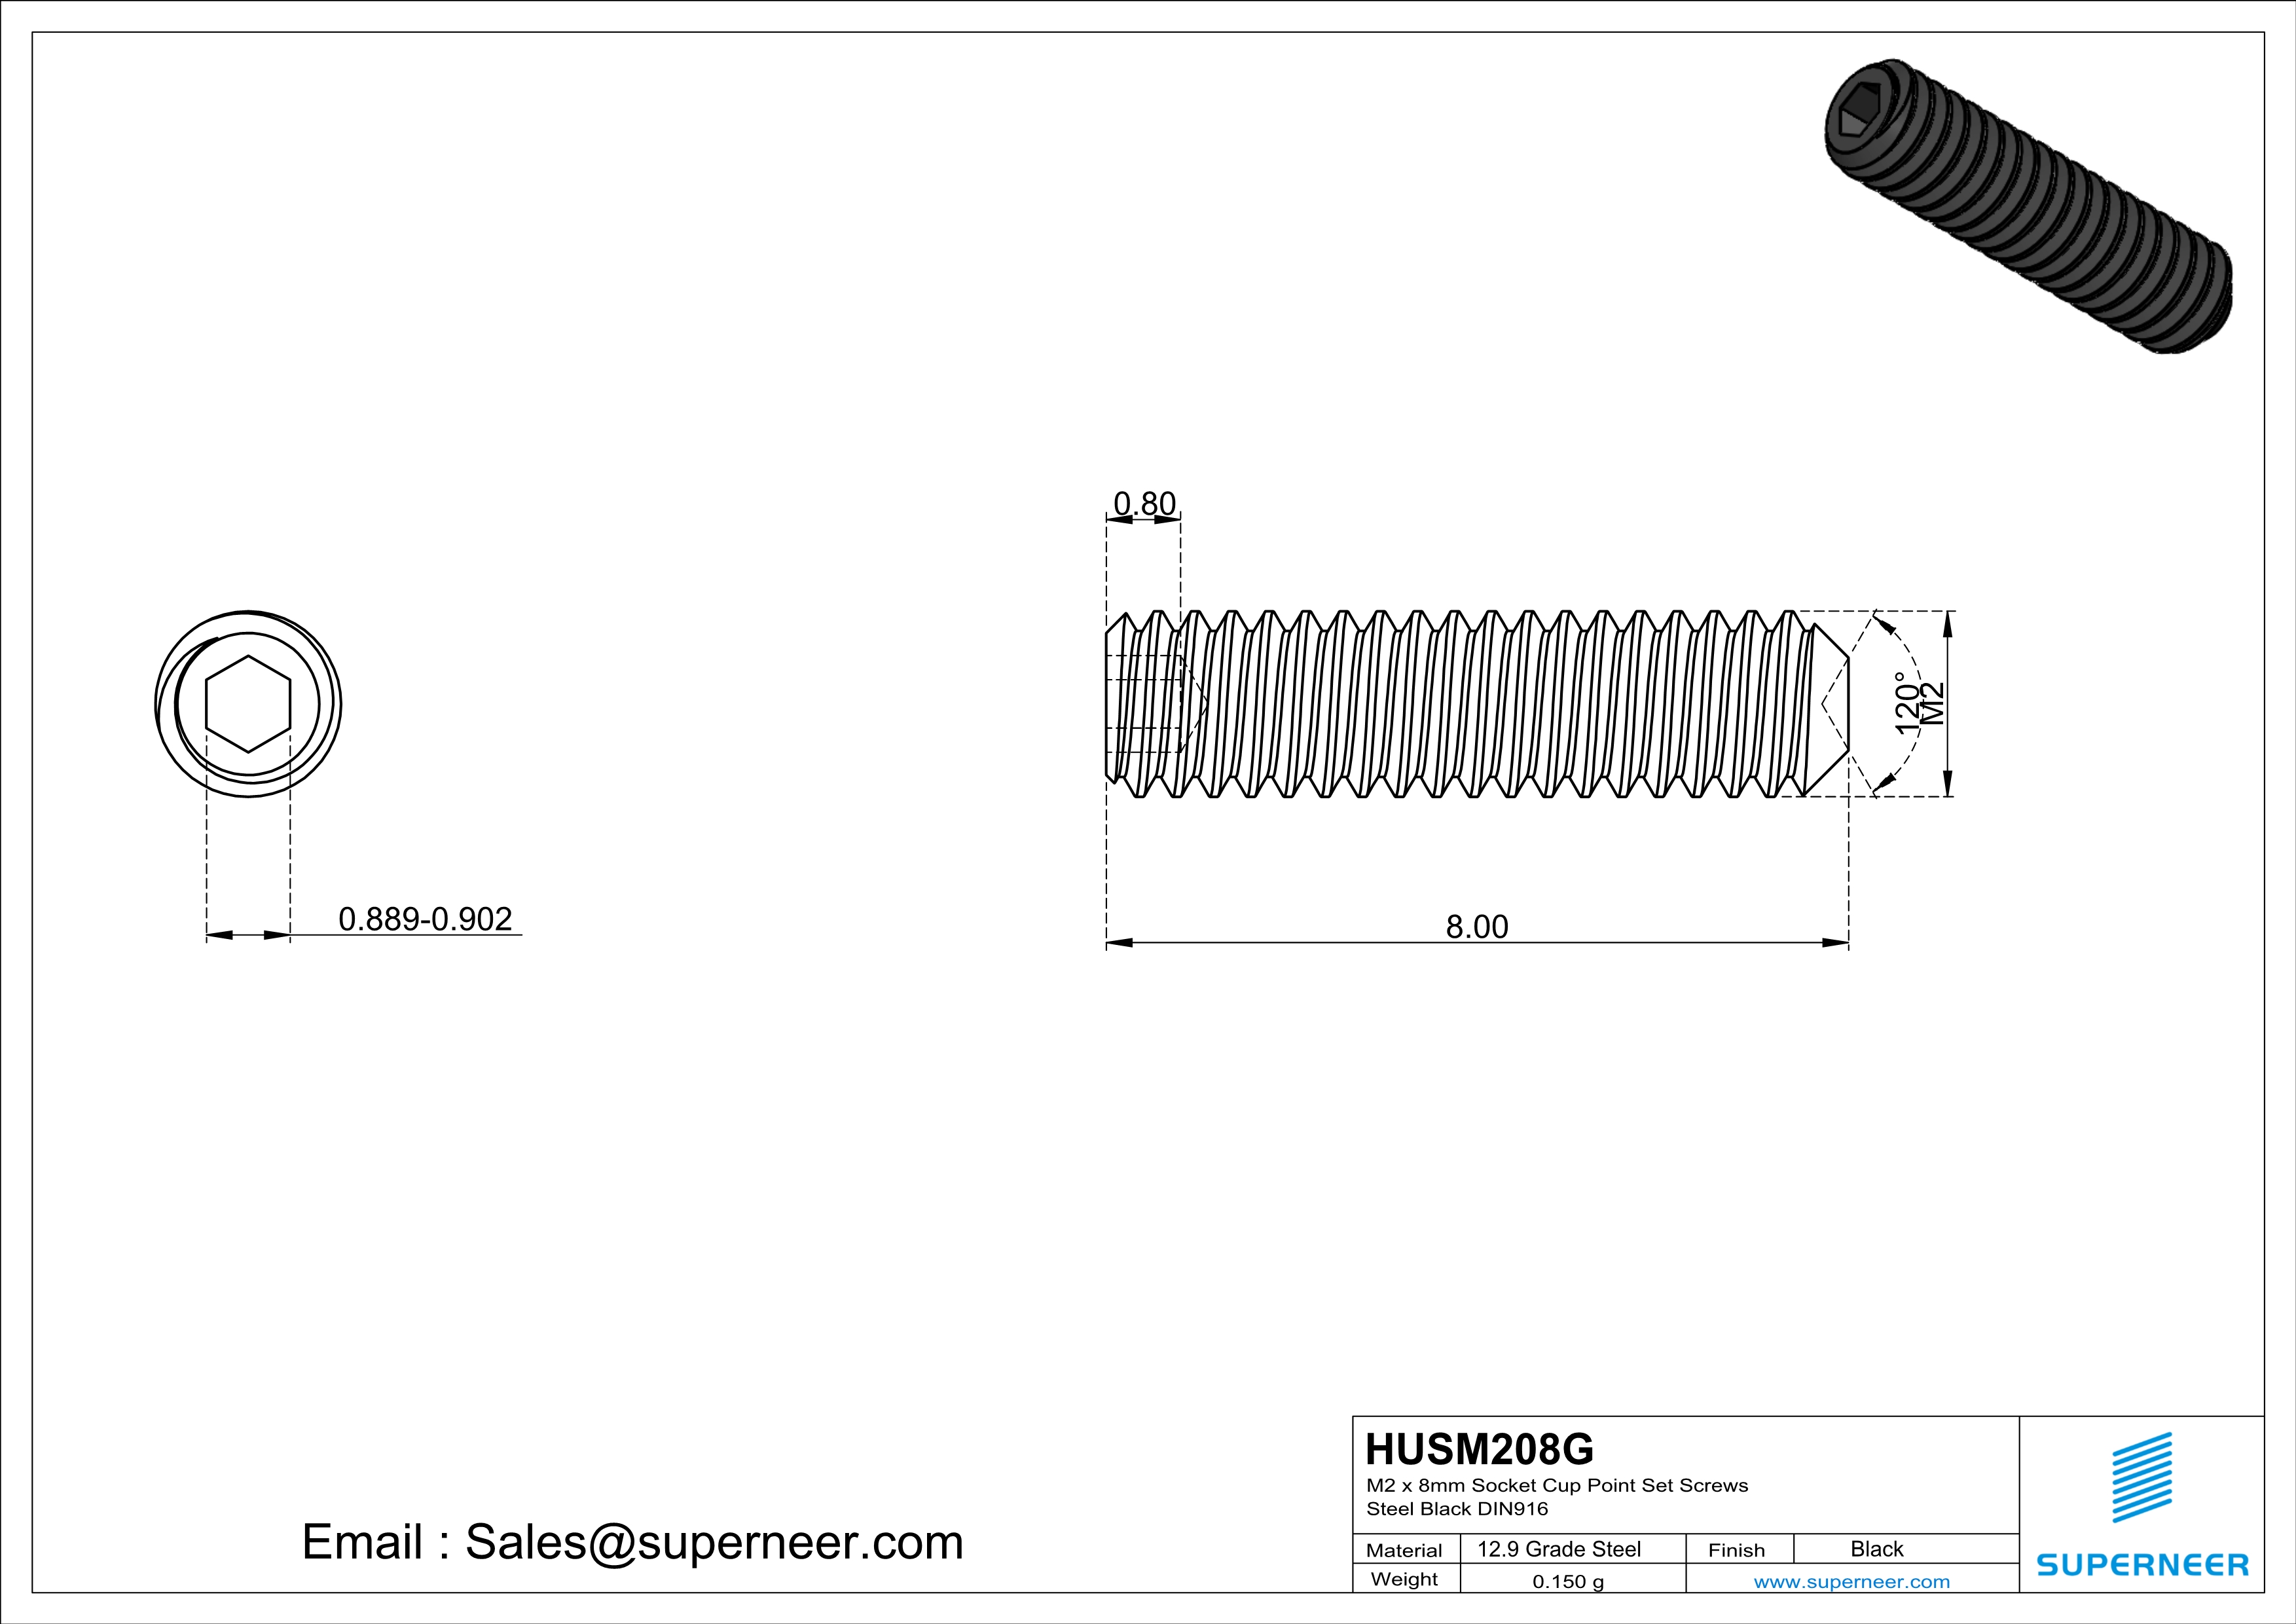 M2 x 8mm Socket Cup Point Set Screws 12.9 Carbon Steel Black DIN916